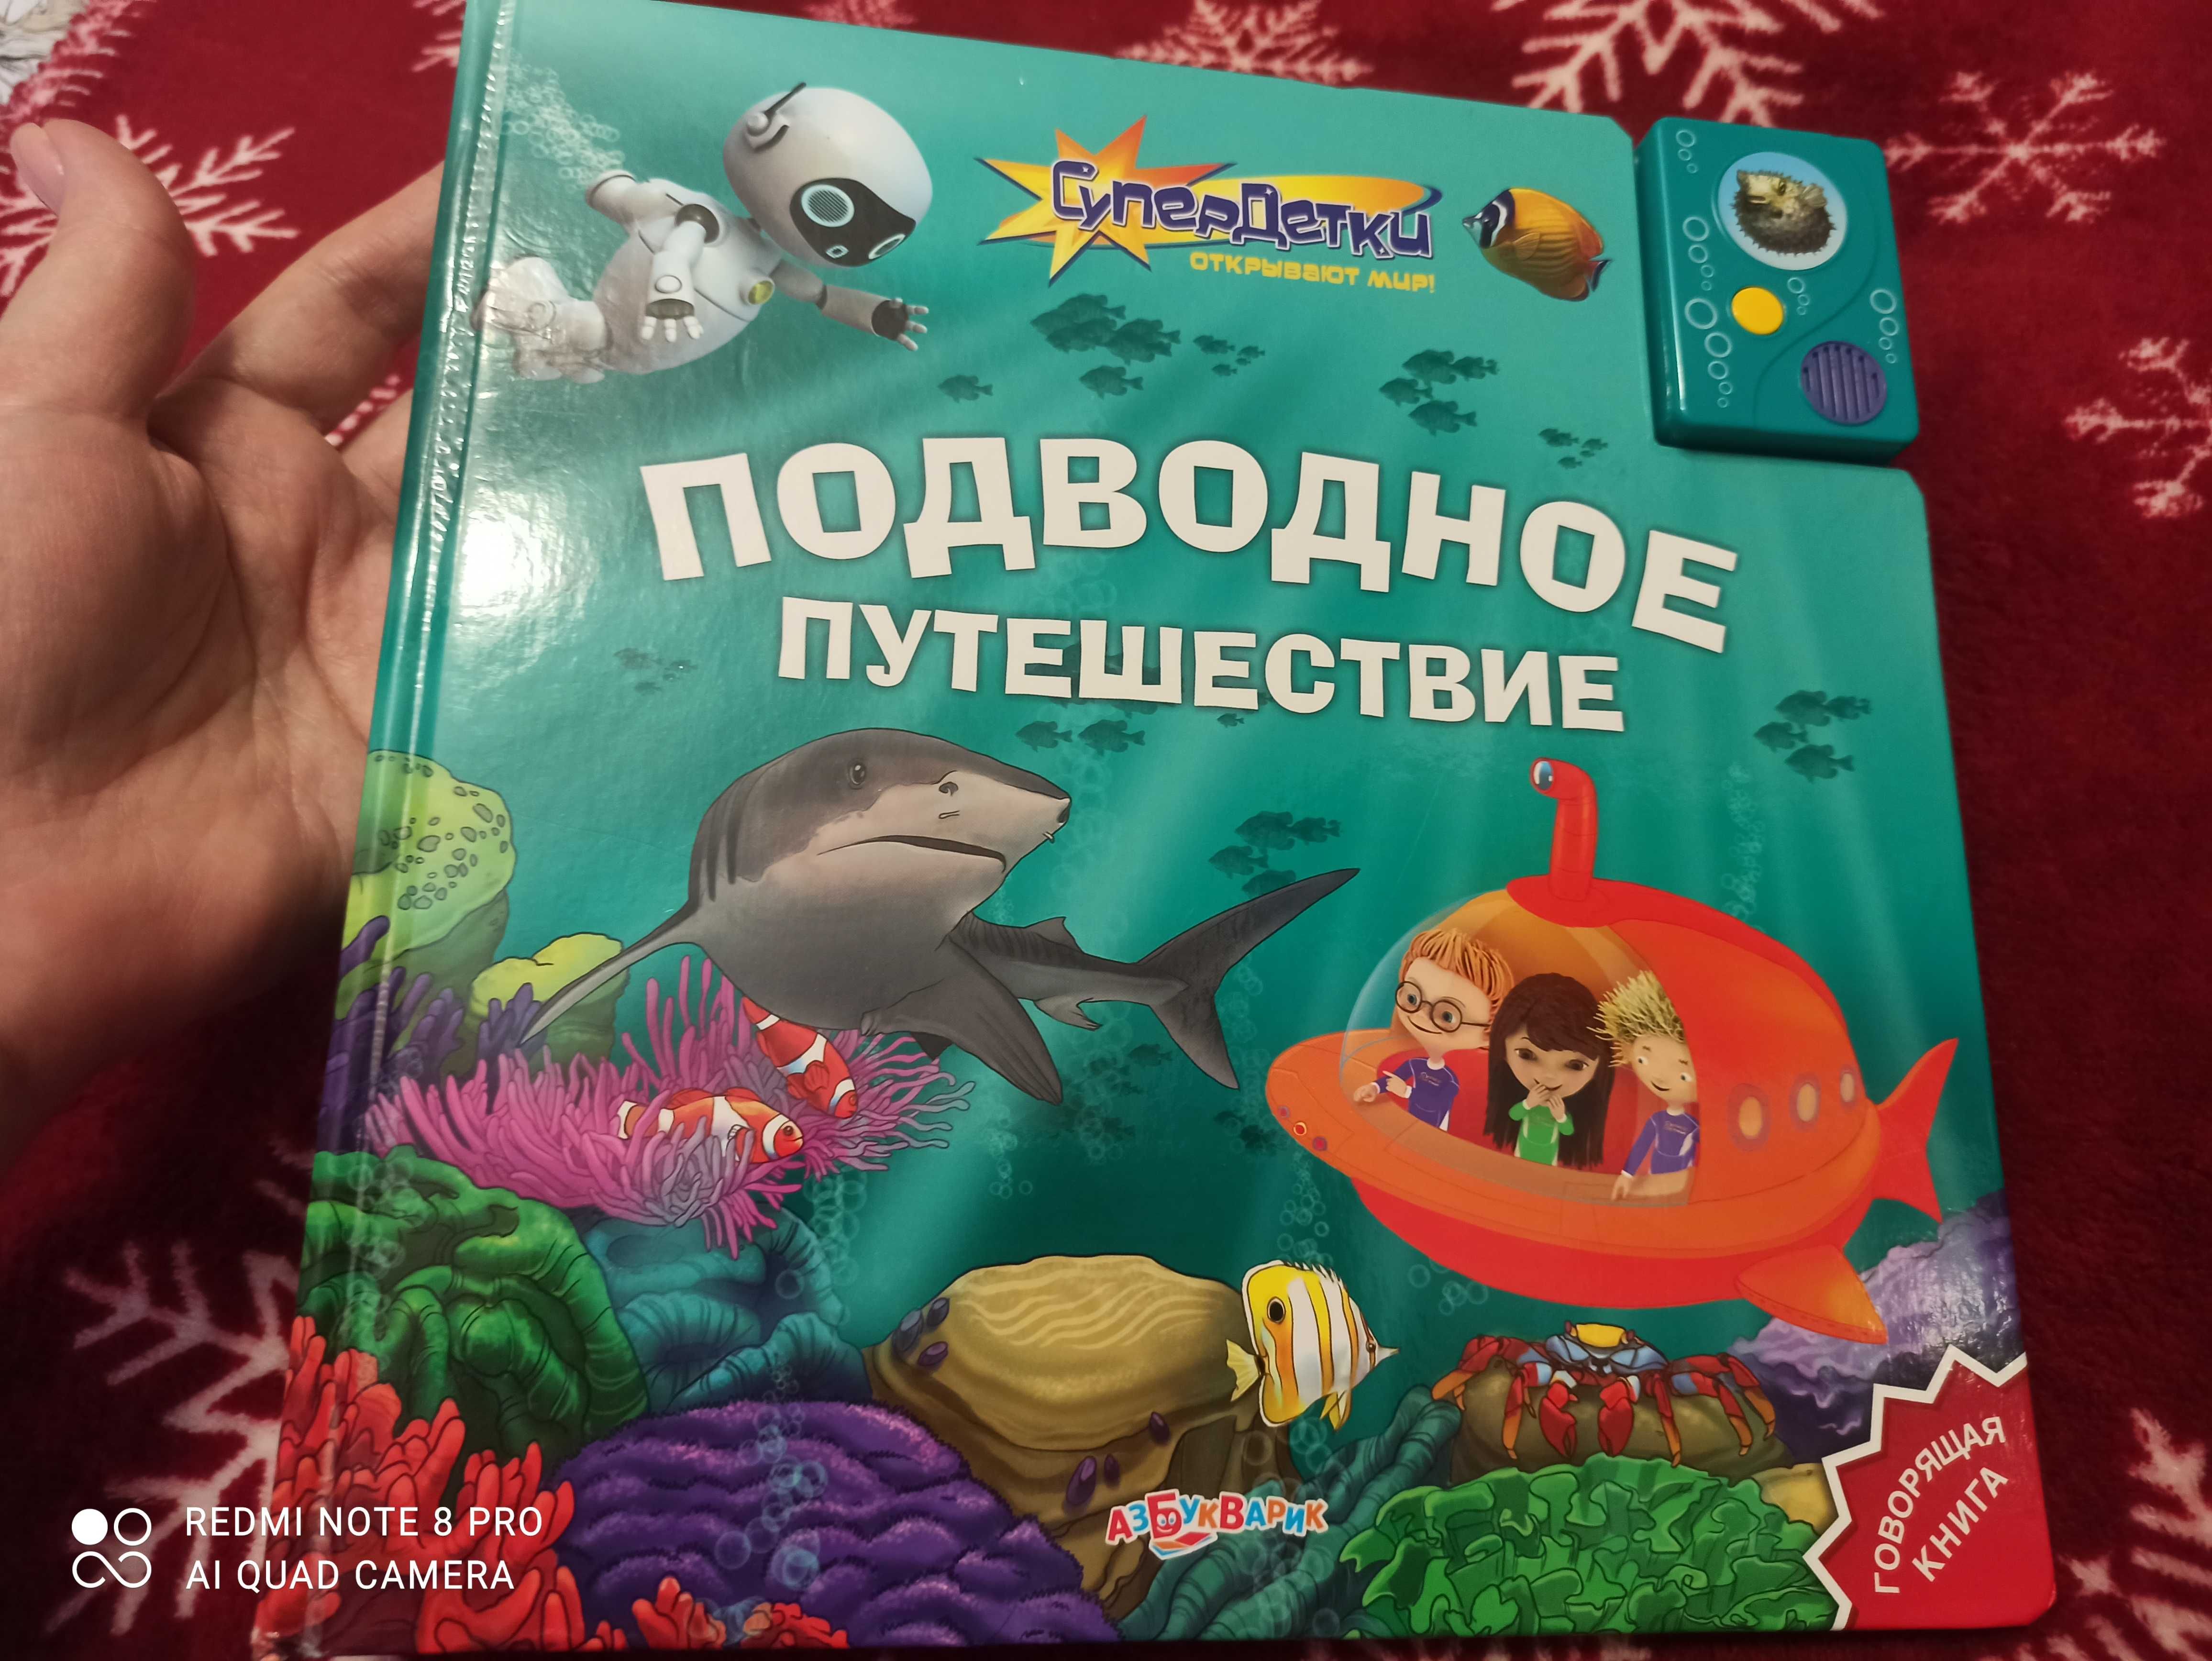 Книга для детей "Подводное путешествие"